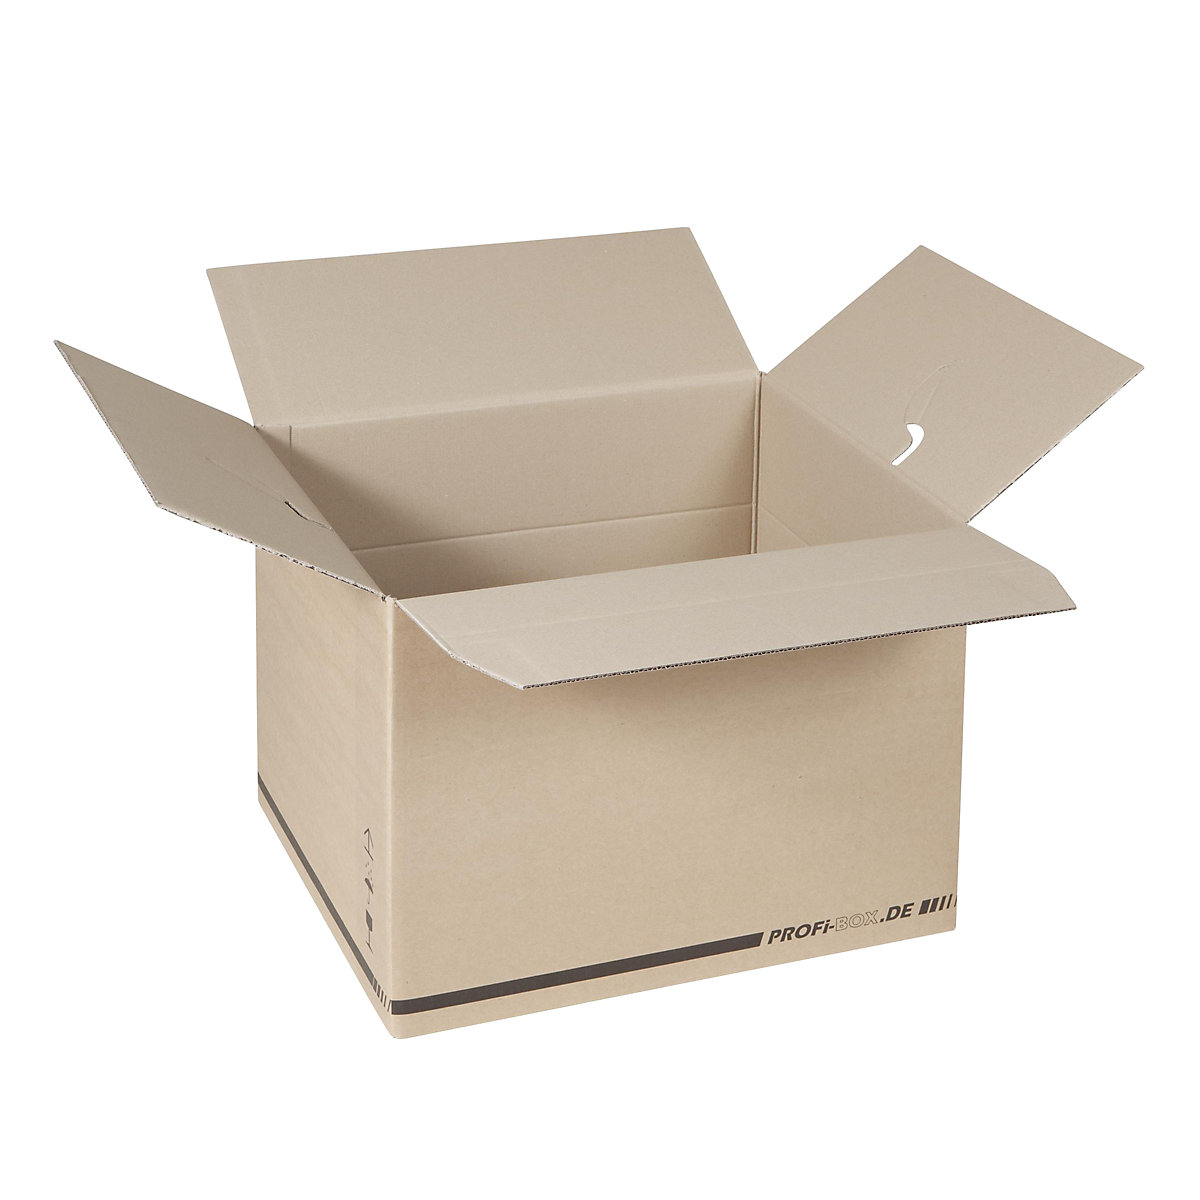 Profi box, z 2-vlnitej lepenky, vnútorné rozmery 476 x 376 x 340 mm, FEFCO 0216, OJ 50 ks-2